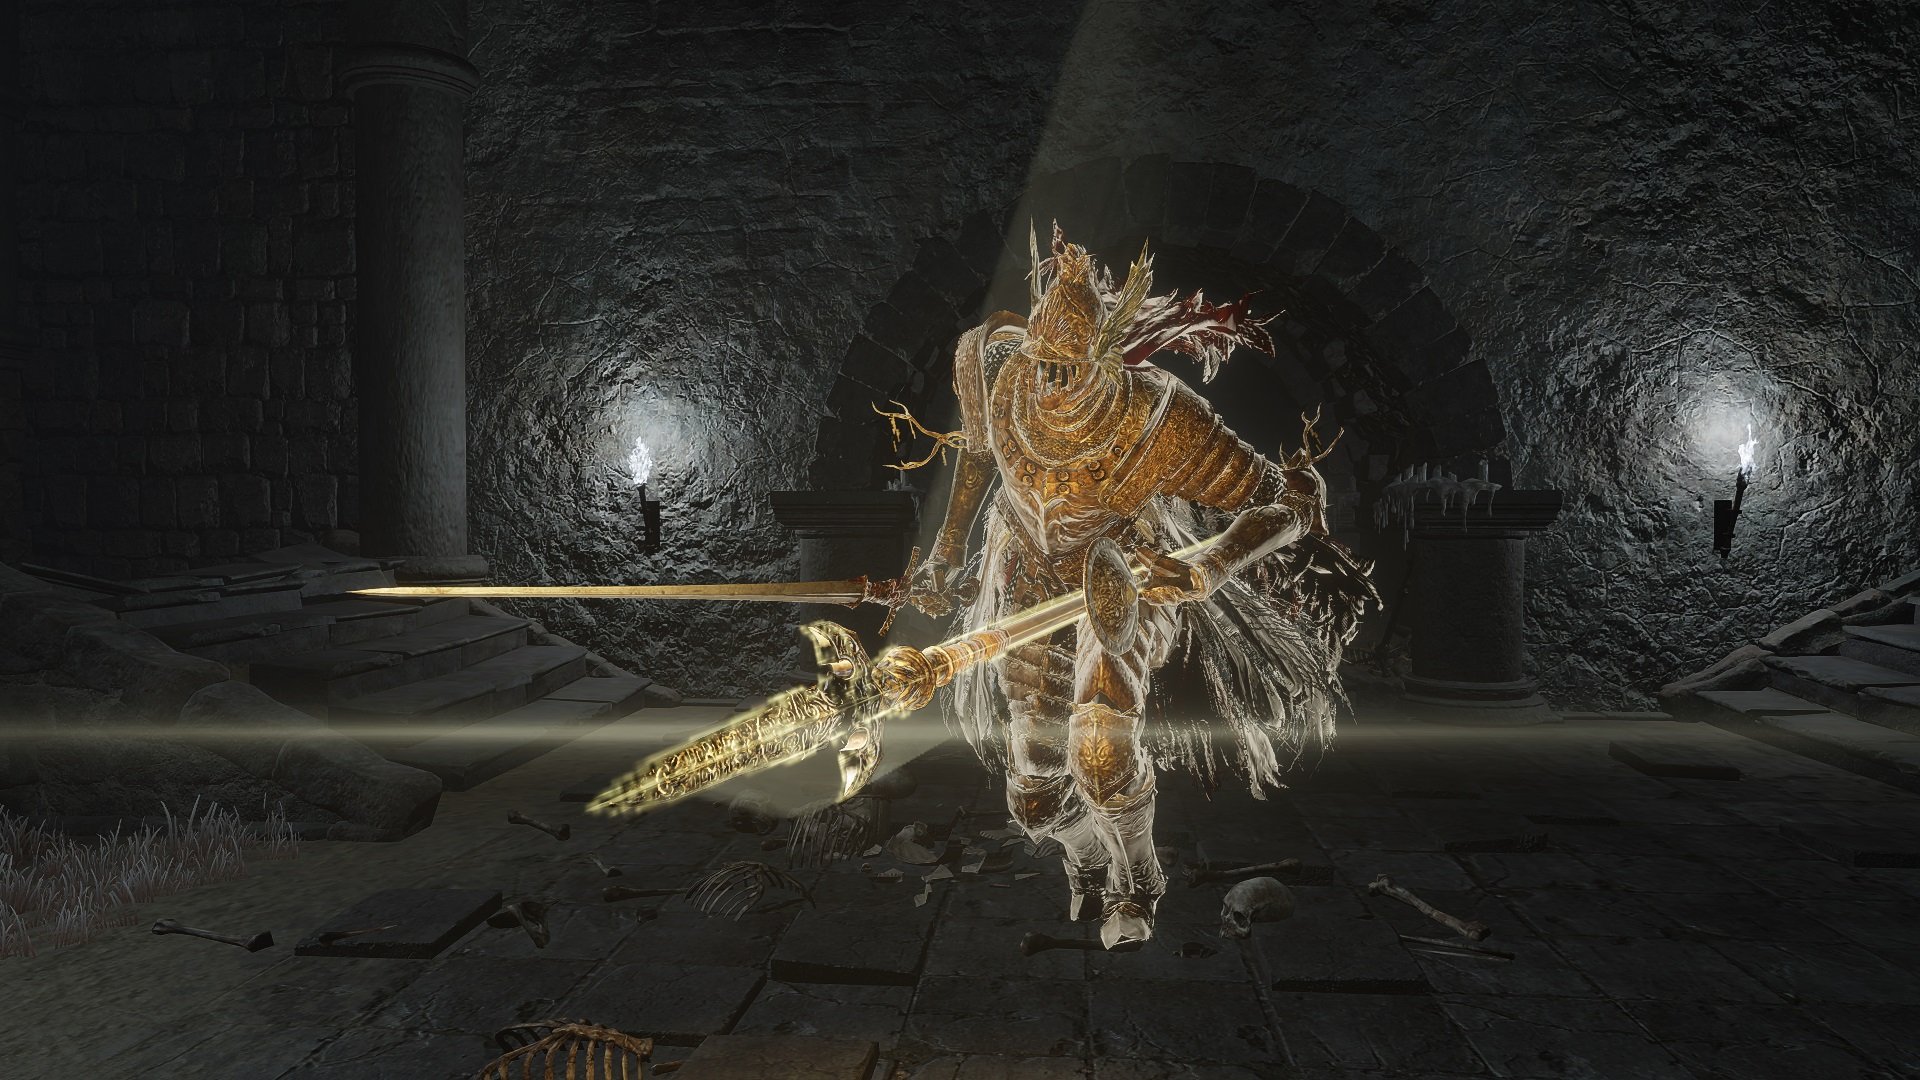 Dark Blade, Knight of Dragon Spirits, Wiki